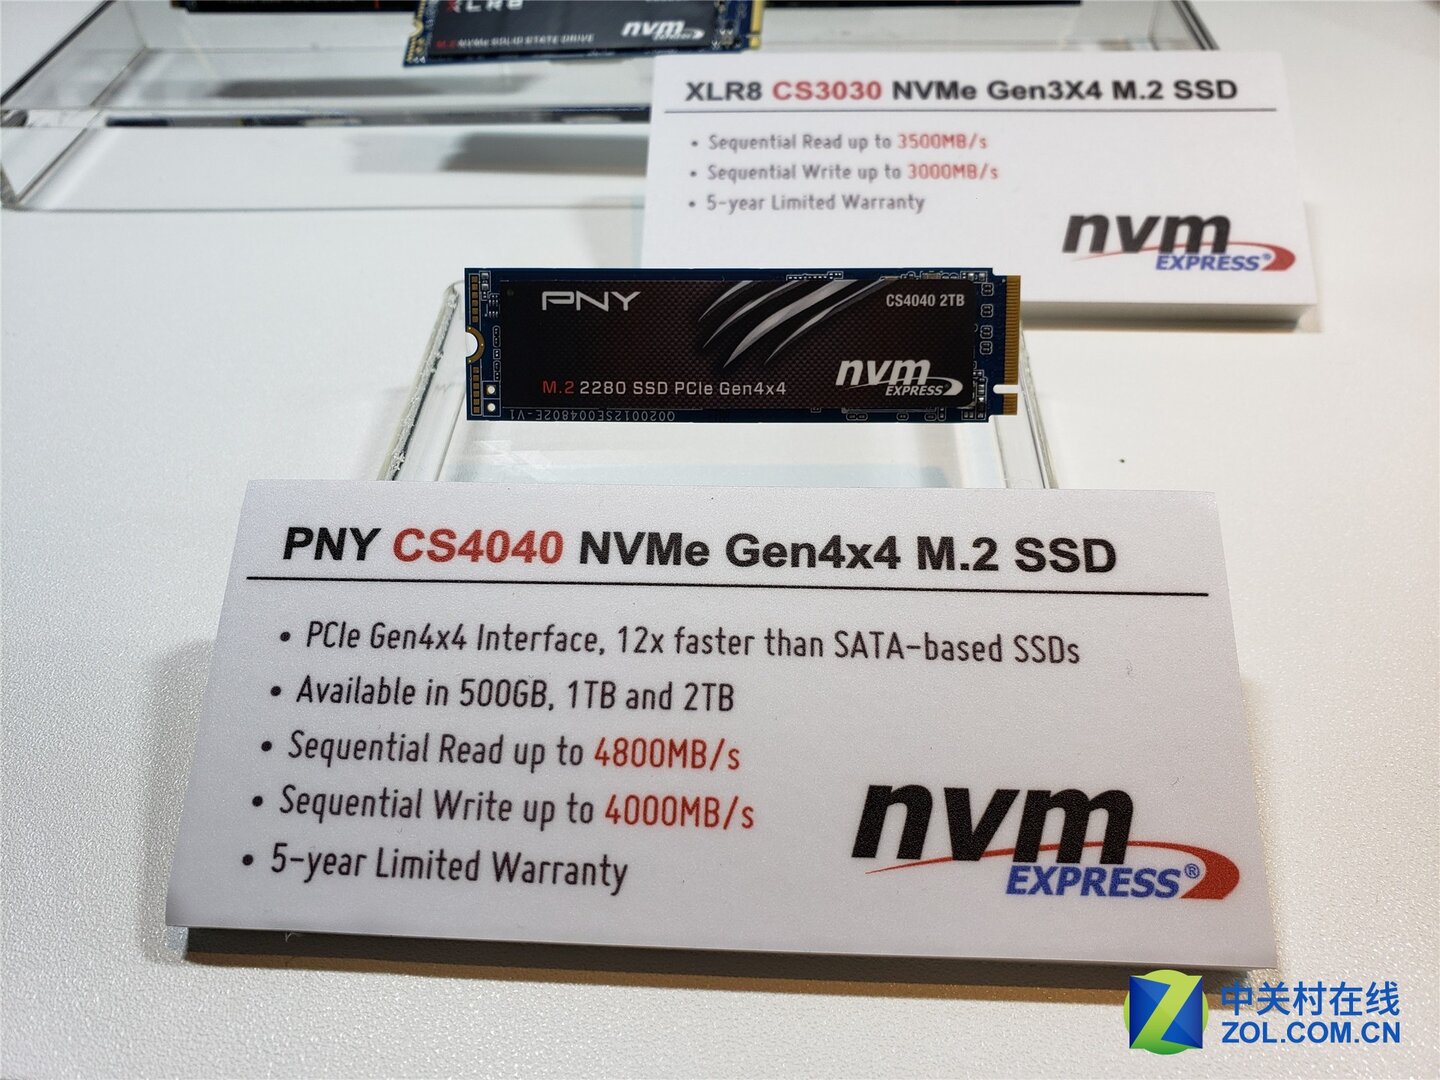 PNY CS4040 NVMe Gen4x4 M.2 SSD